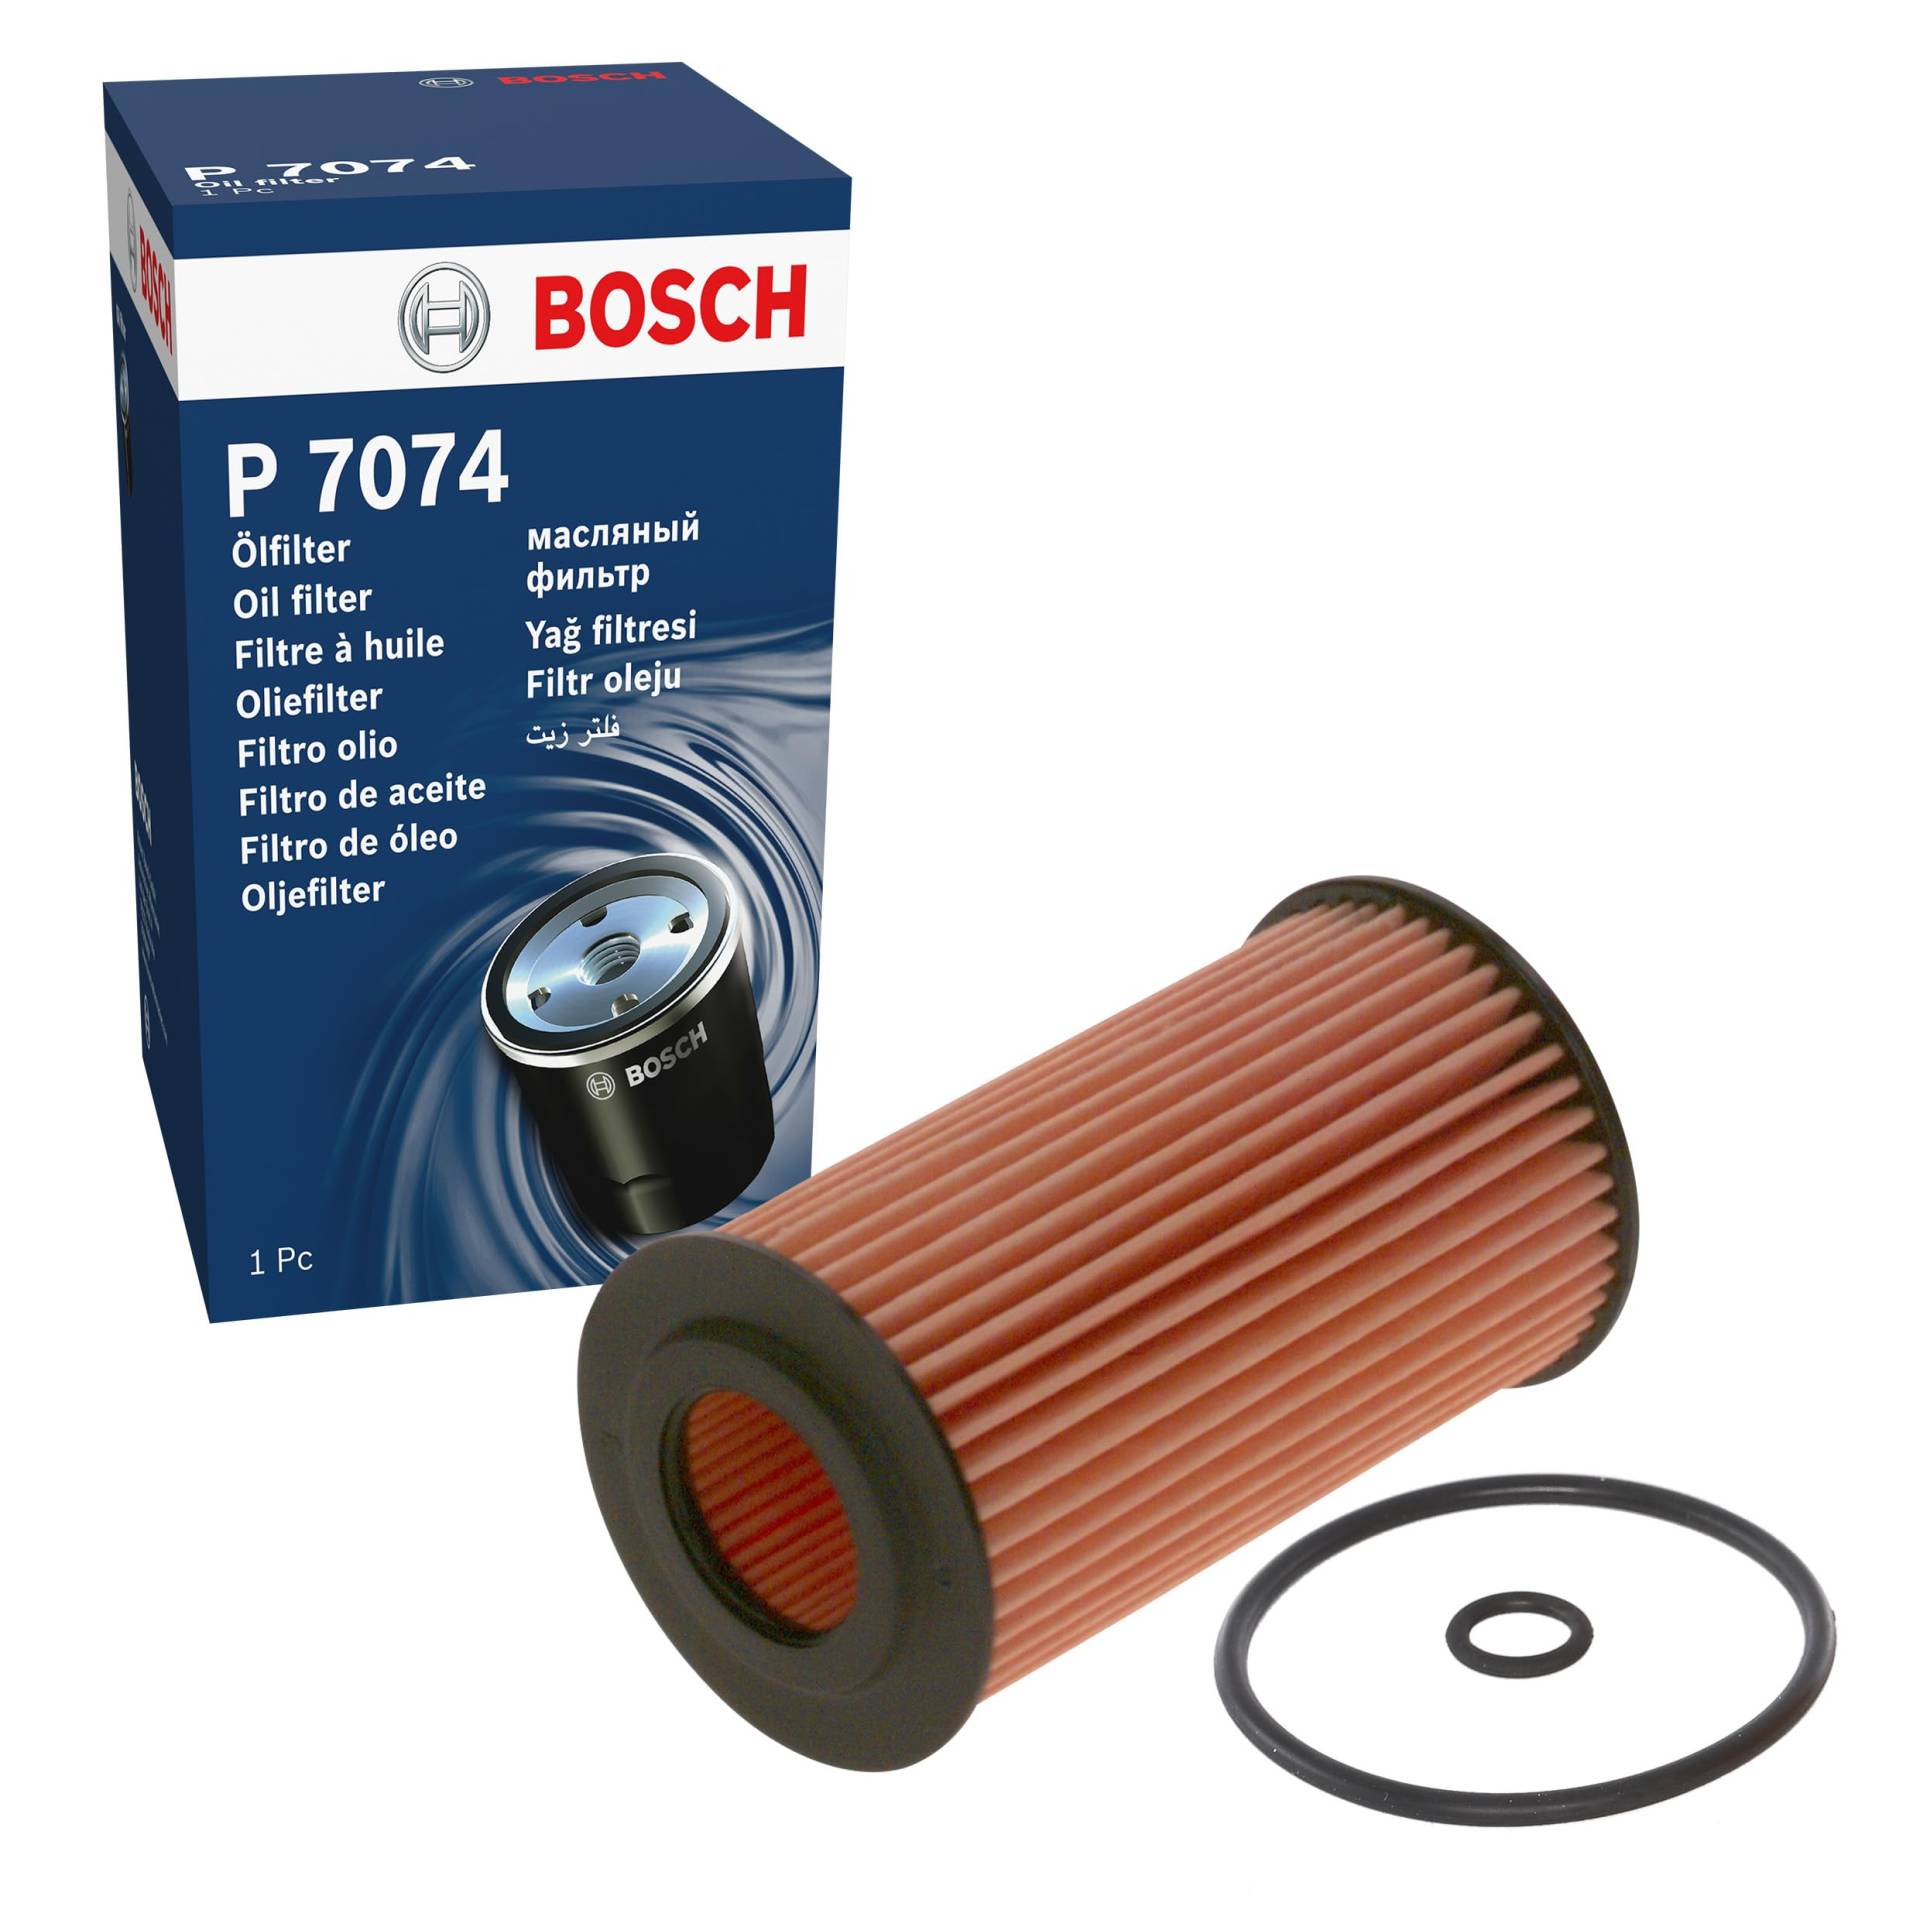 Bosch P7074 - Ölfilter Auto von Bosch Automotive